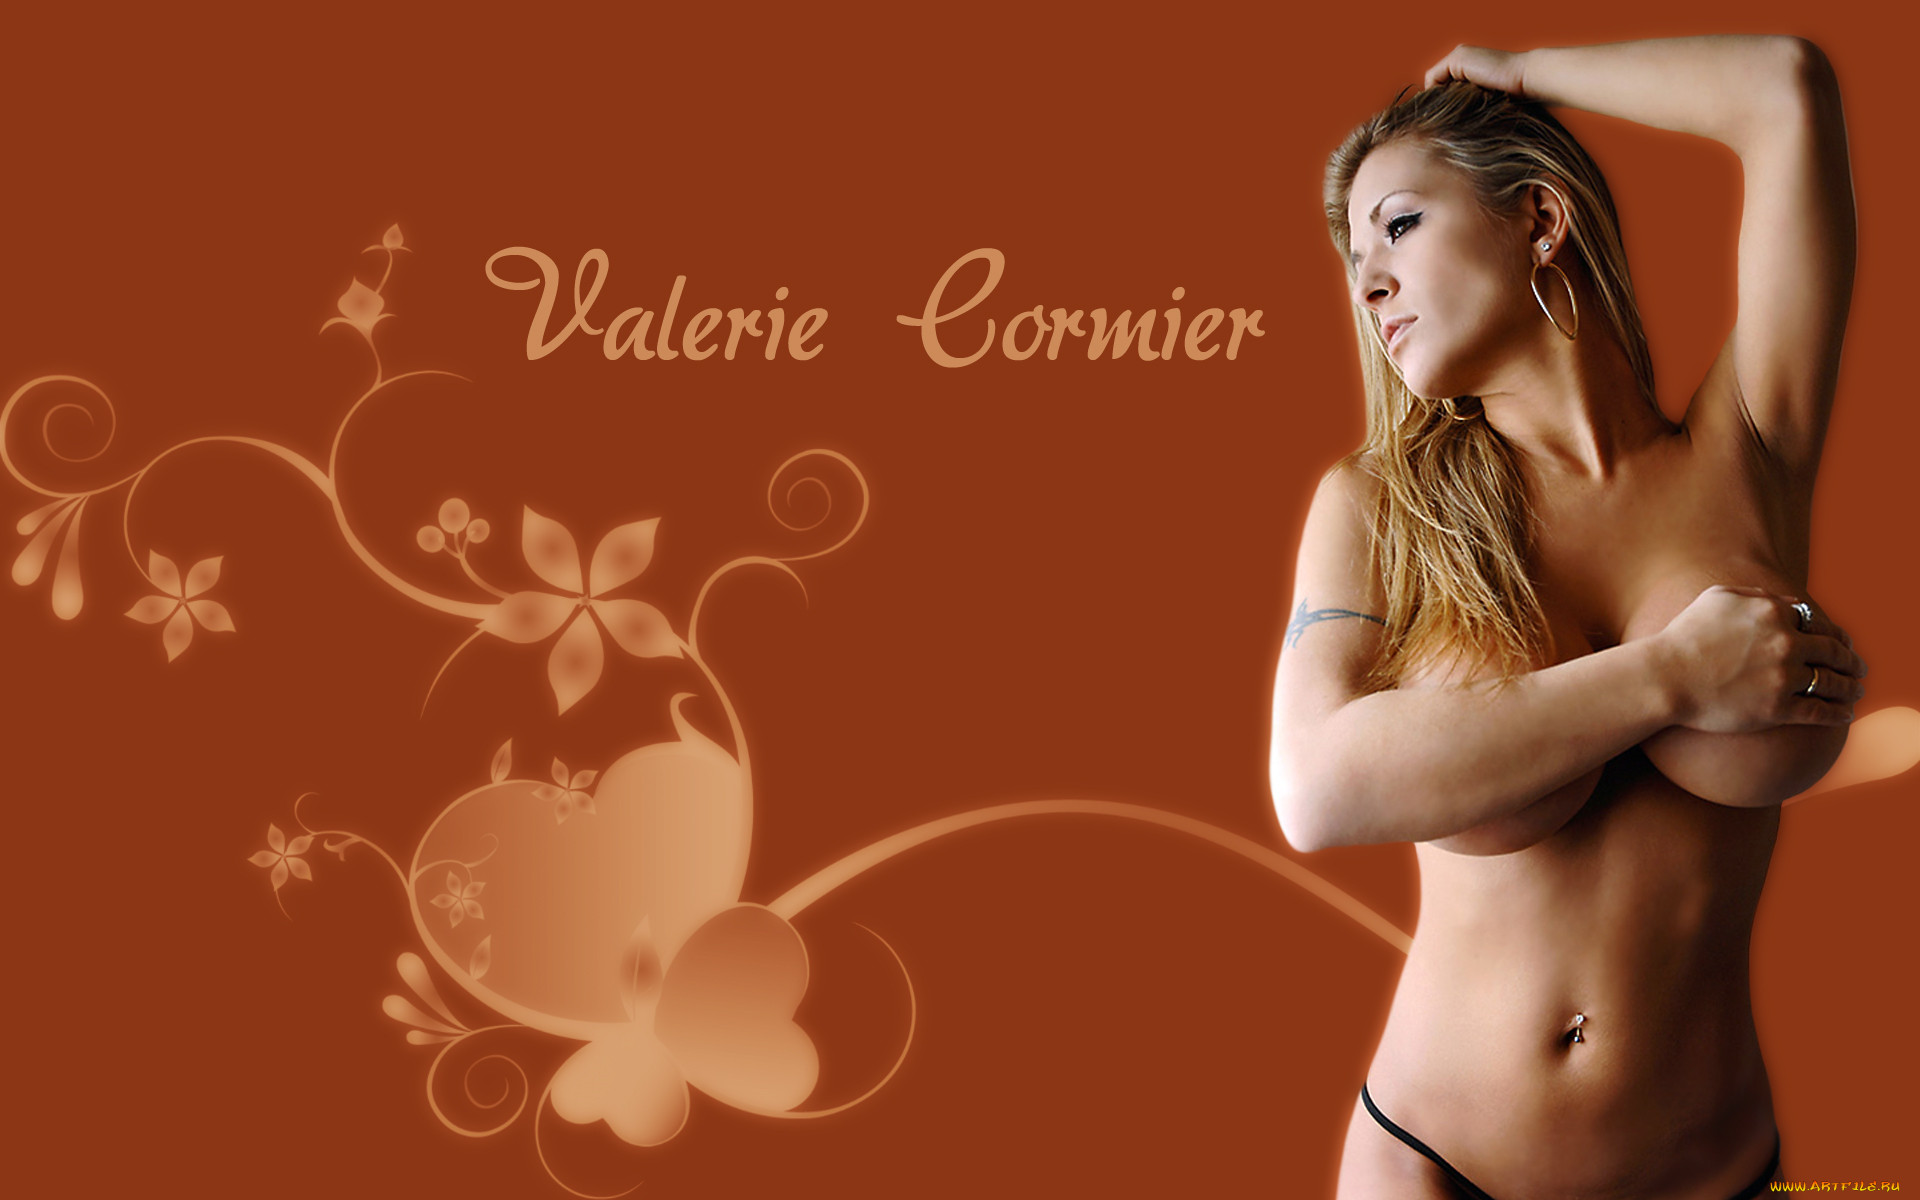 Valerie Cormier, 